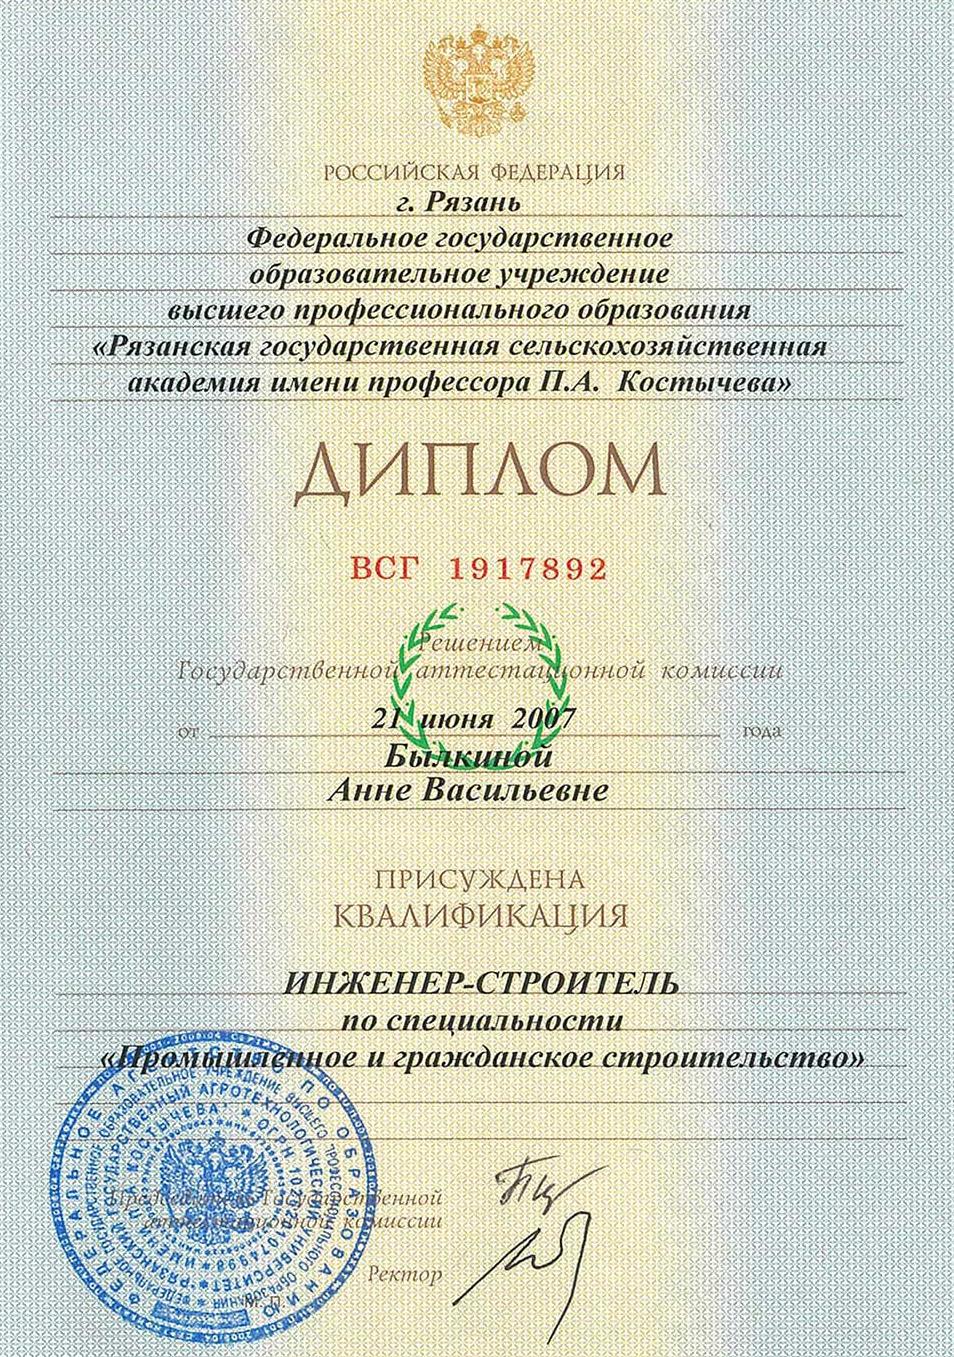 Сертификат о ВО Былкина А.В.